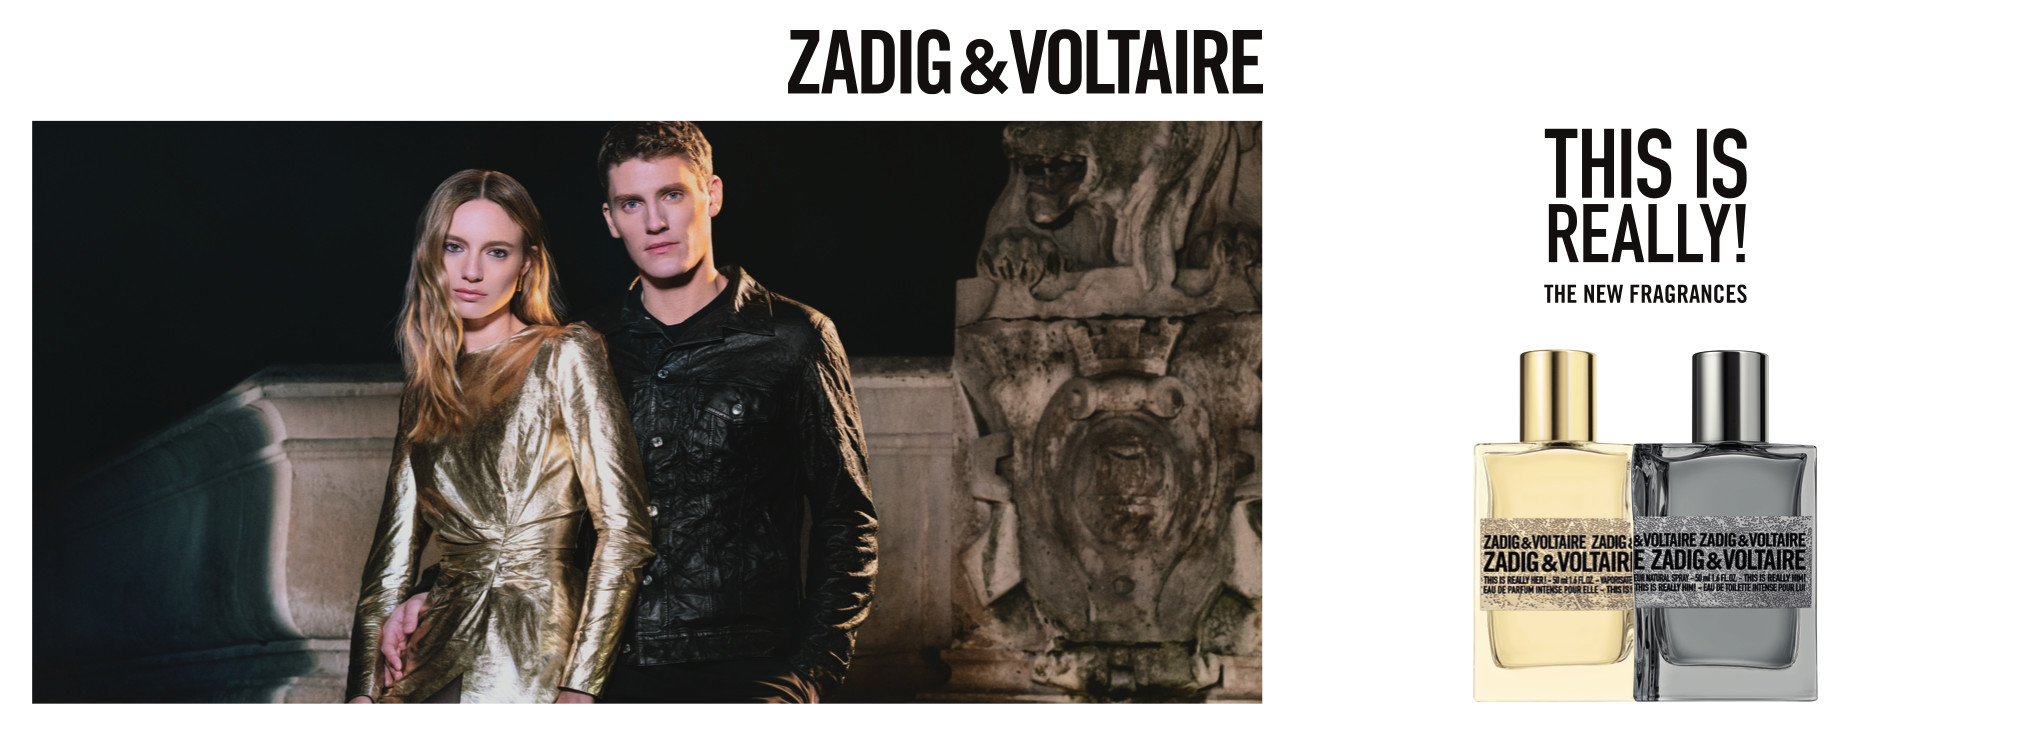 Zadig & Voltaire_brand